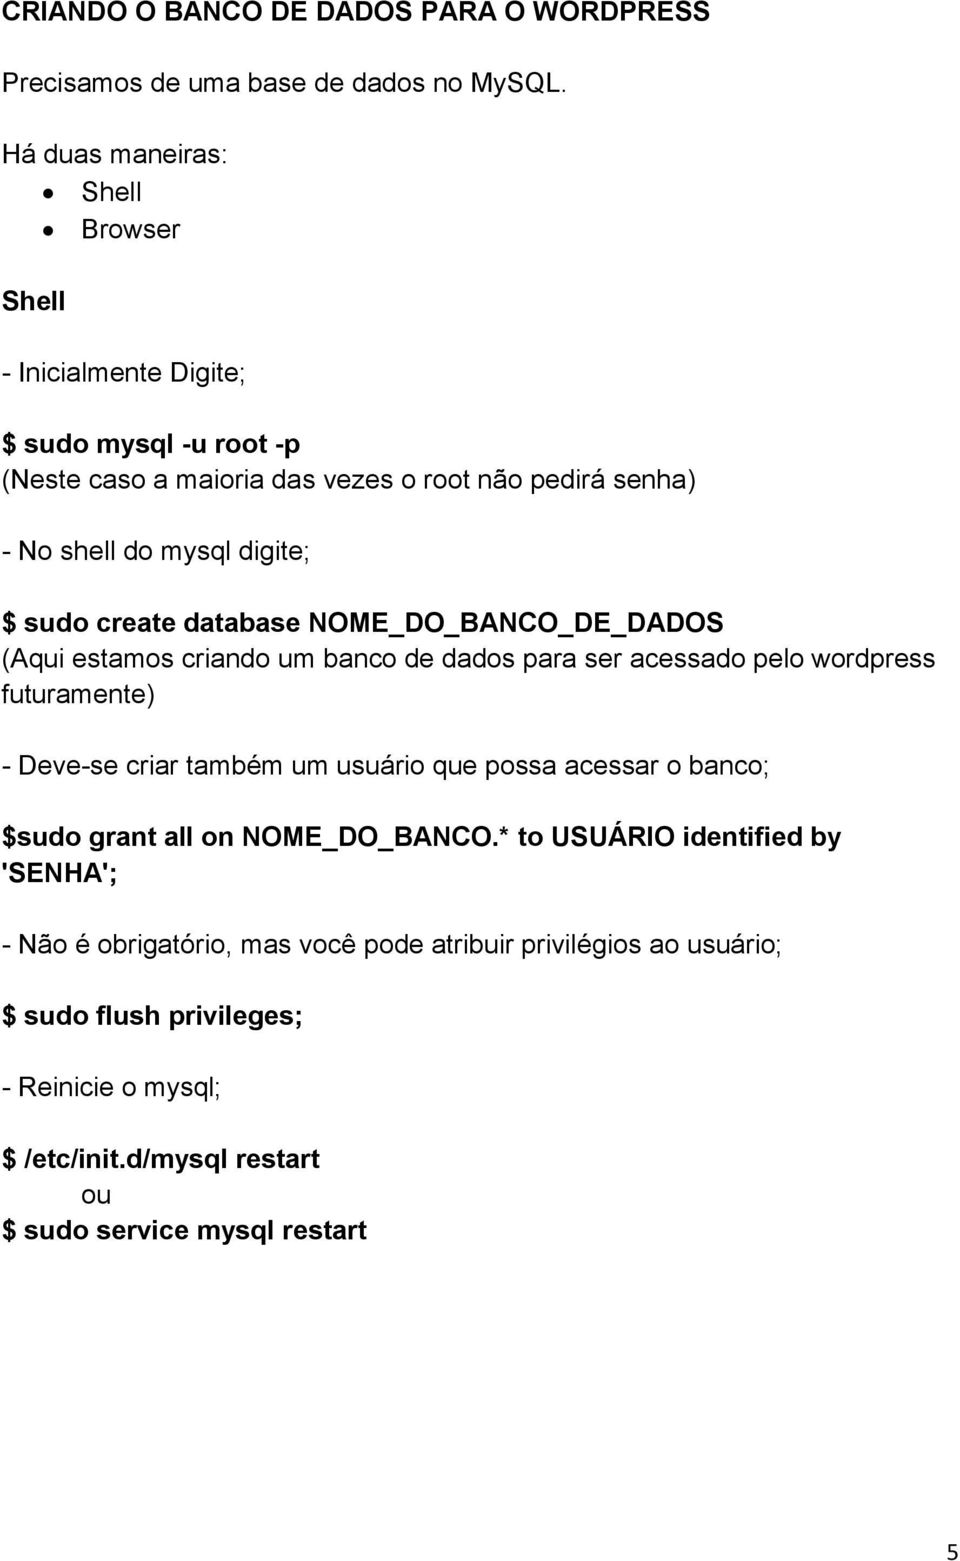 sudo create database NOME_DO_BANCO_DE_DADOS (Aqui estamos criando um banco de dados para ser acessado pelo wordpress futuramente) - Deve-se criar também um usuário que